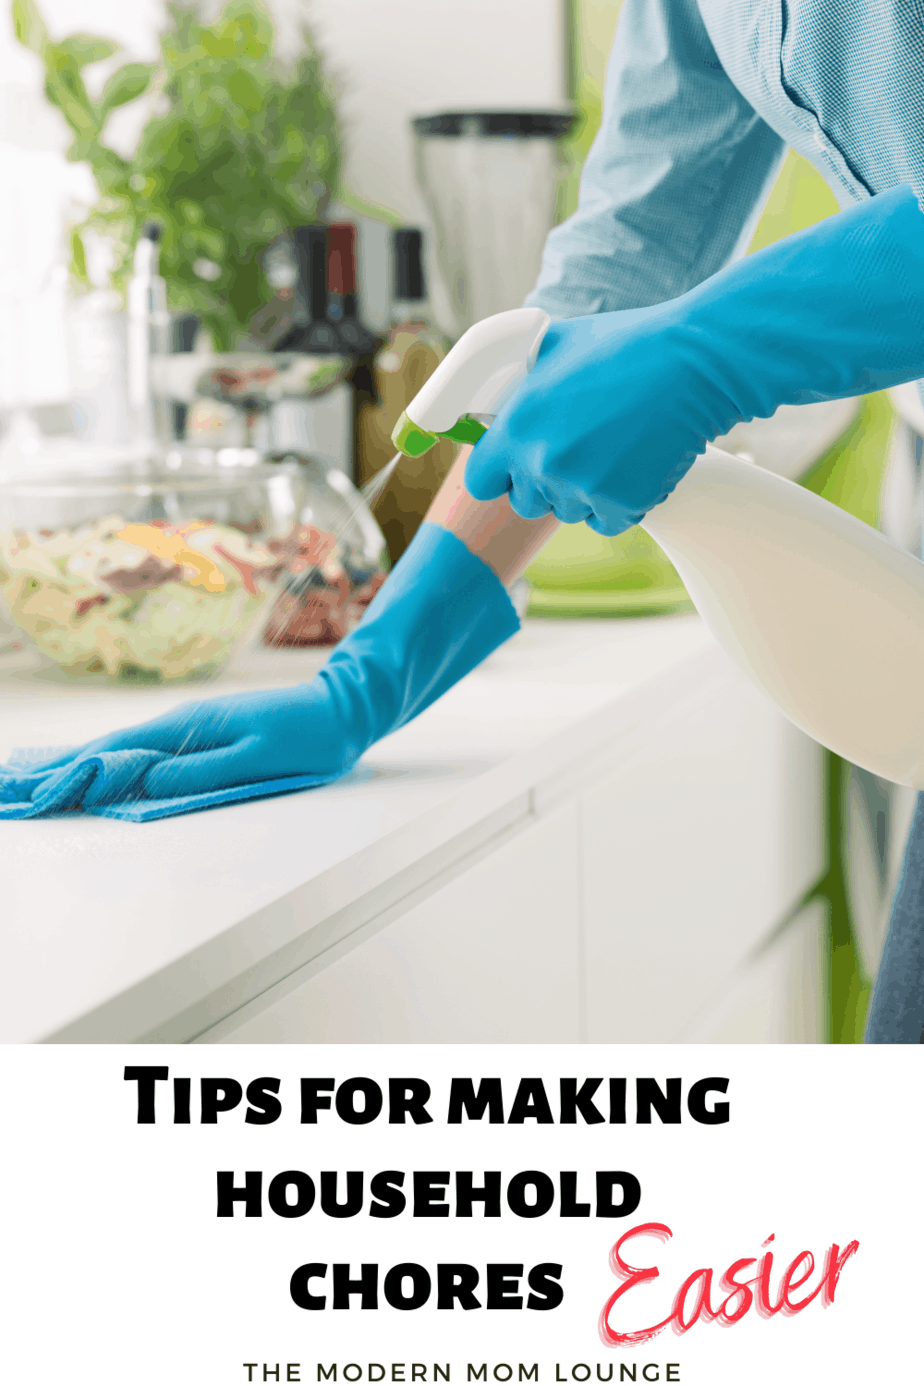 Tips for making household chores easier